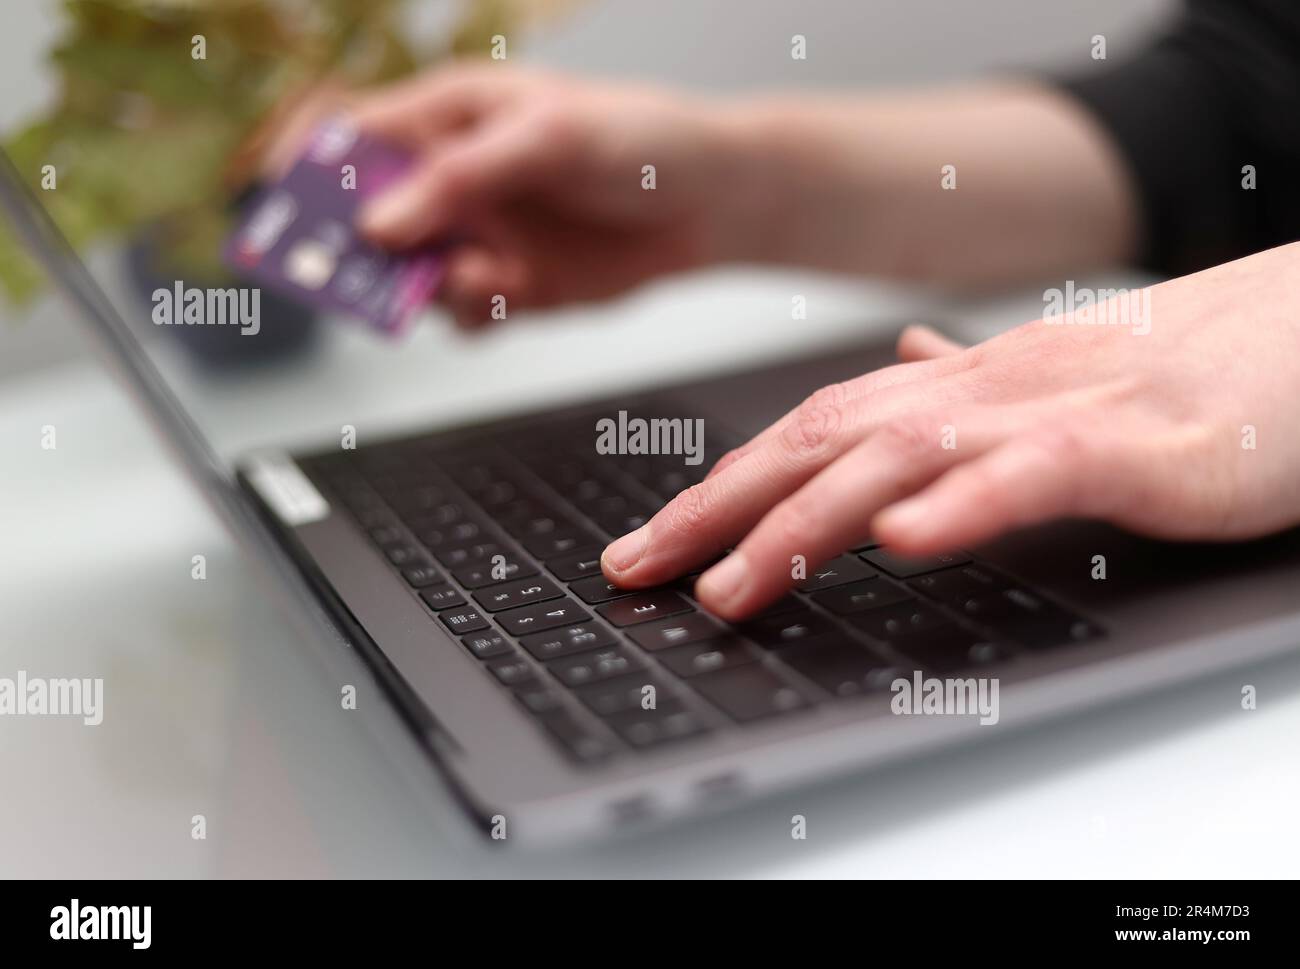 Datei Foto vom 30/03/20 einer Frau, die einen Laptop benutzt, während sie eine Bankkarte hält, während Menschen mit Neurodivergenzen und psychischen Problemen „finanziell geschädigt“ werden durch Banken und andere Finanzdienstleister, Experten sagten. Stockfoto